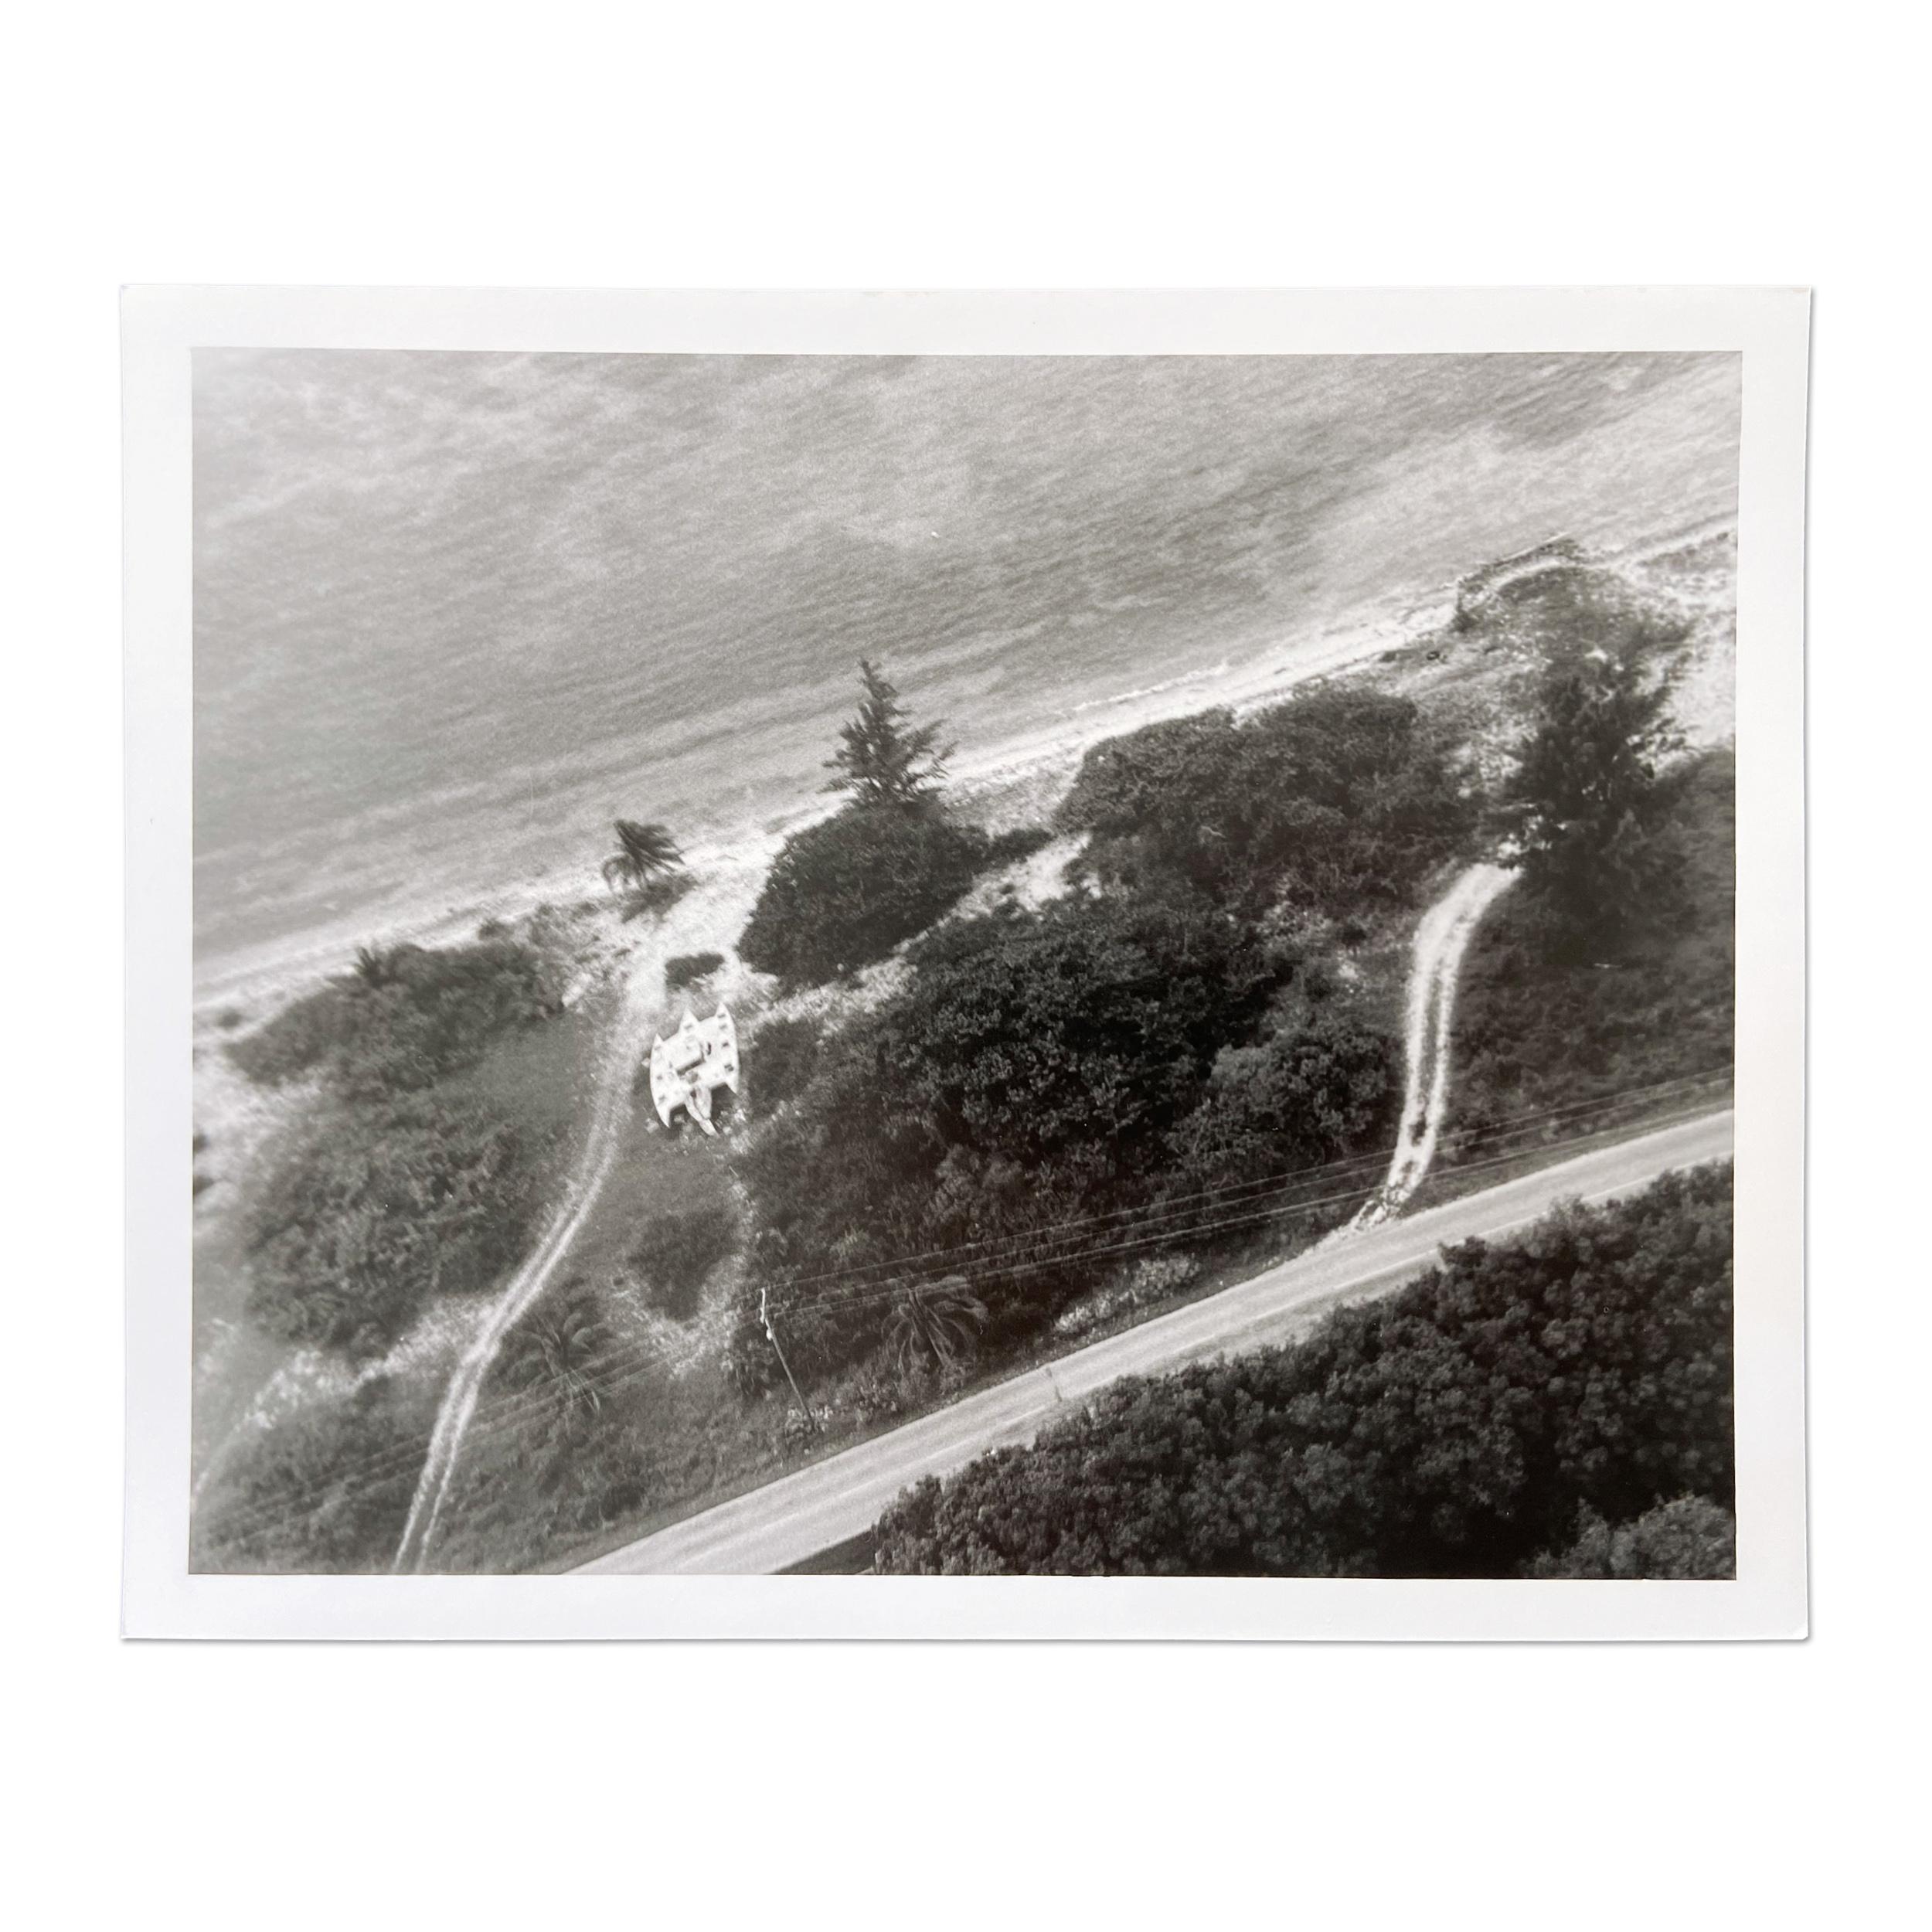 Tacita Dean (Britin, geboren 1965)
Luftaufnahme von Teignmouth Electron, Cayman Brac 16. September 1998, 2000
Medium: Gelatinesilberdruck auf Papier
Abmessungen: 21 x 26 cm (8 1/4 x 10 1/4 Zoll)
Auflage von 100: handsigniert, nummeriert und datiert
